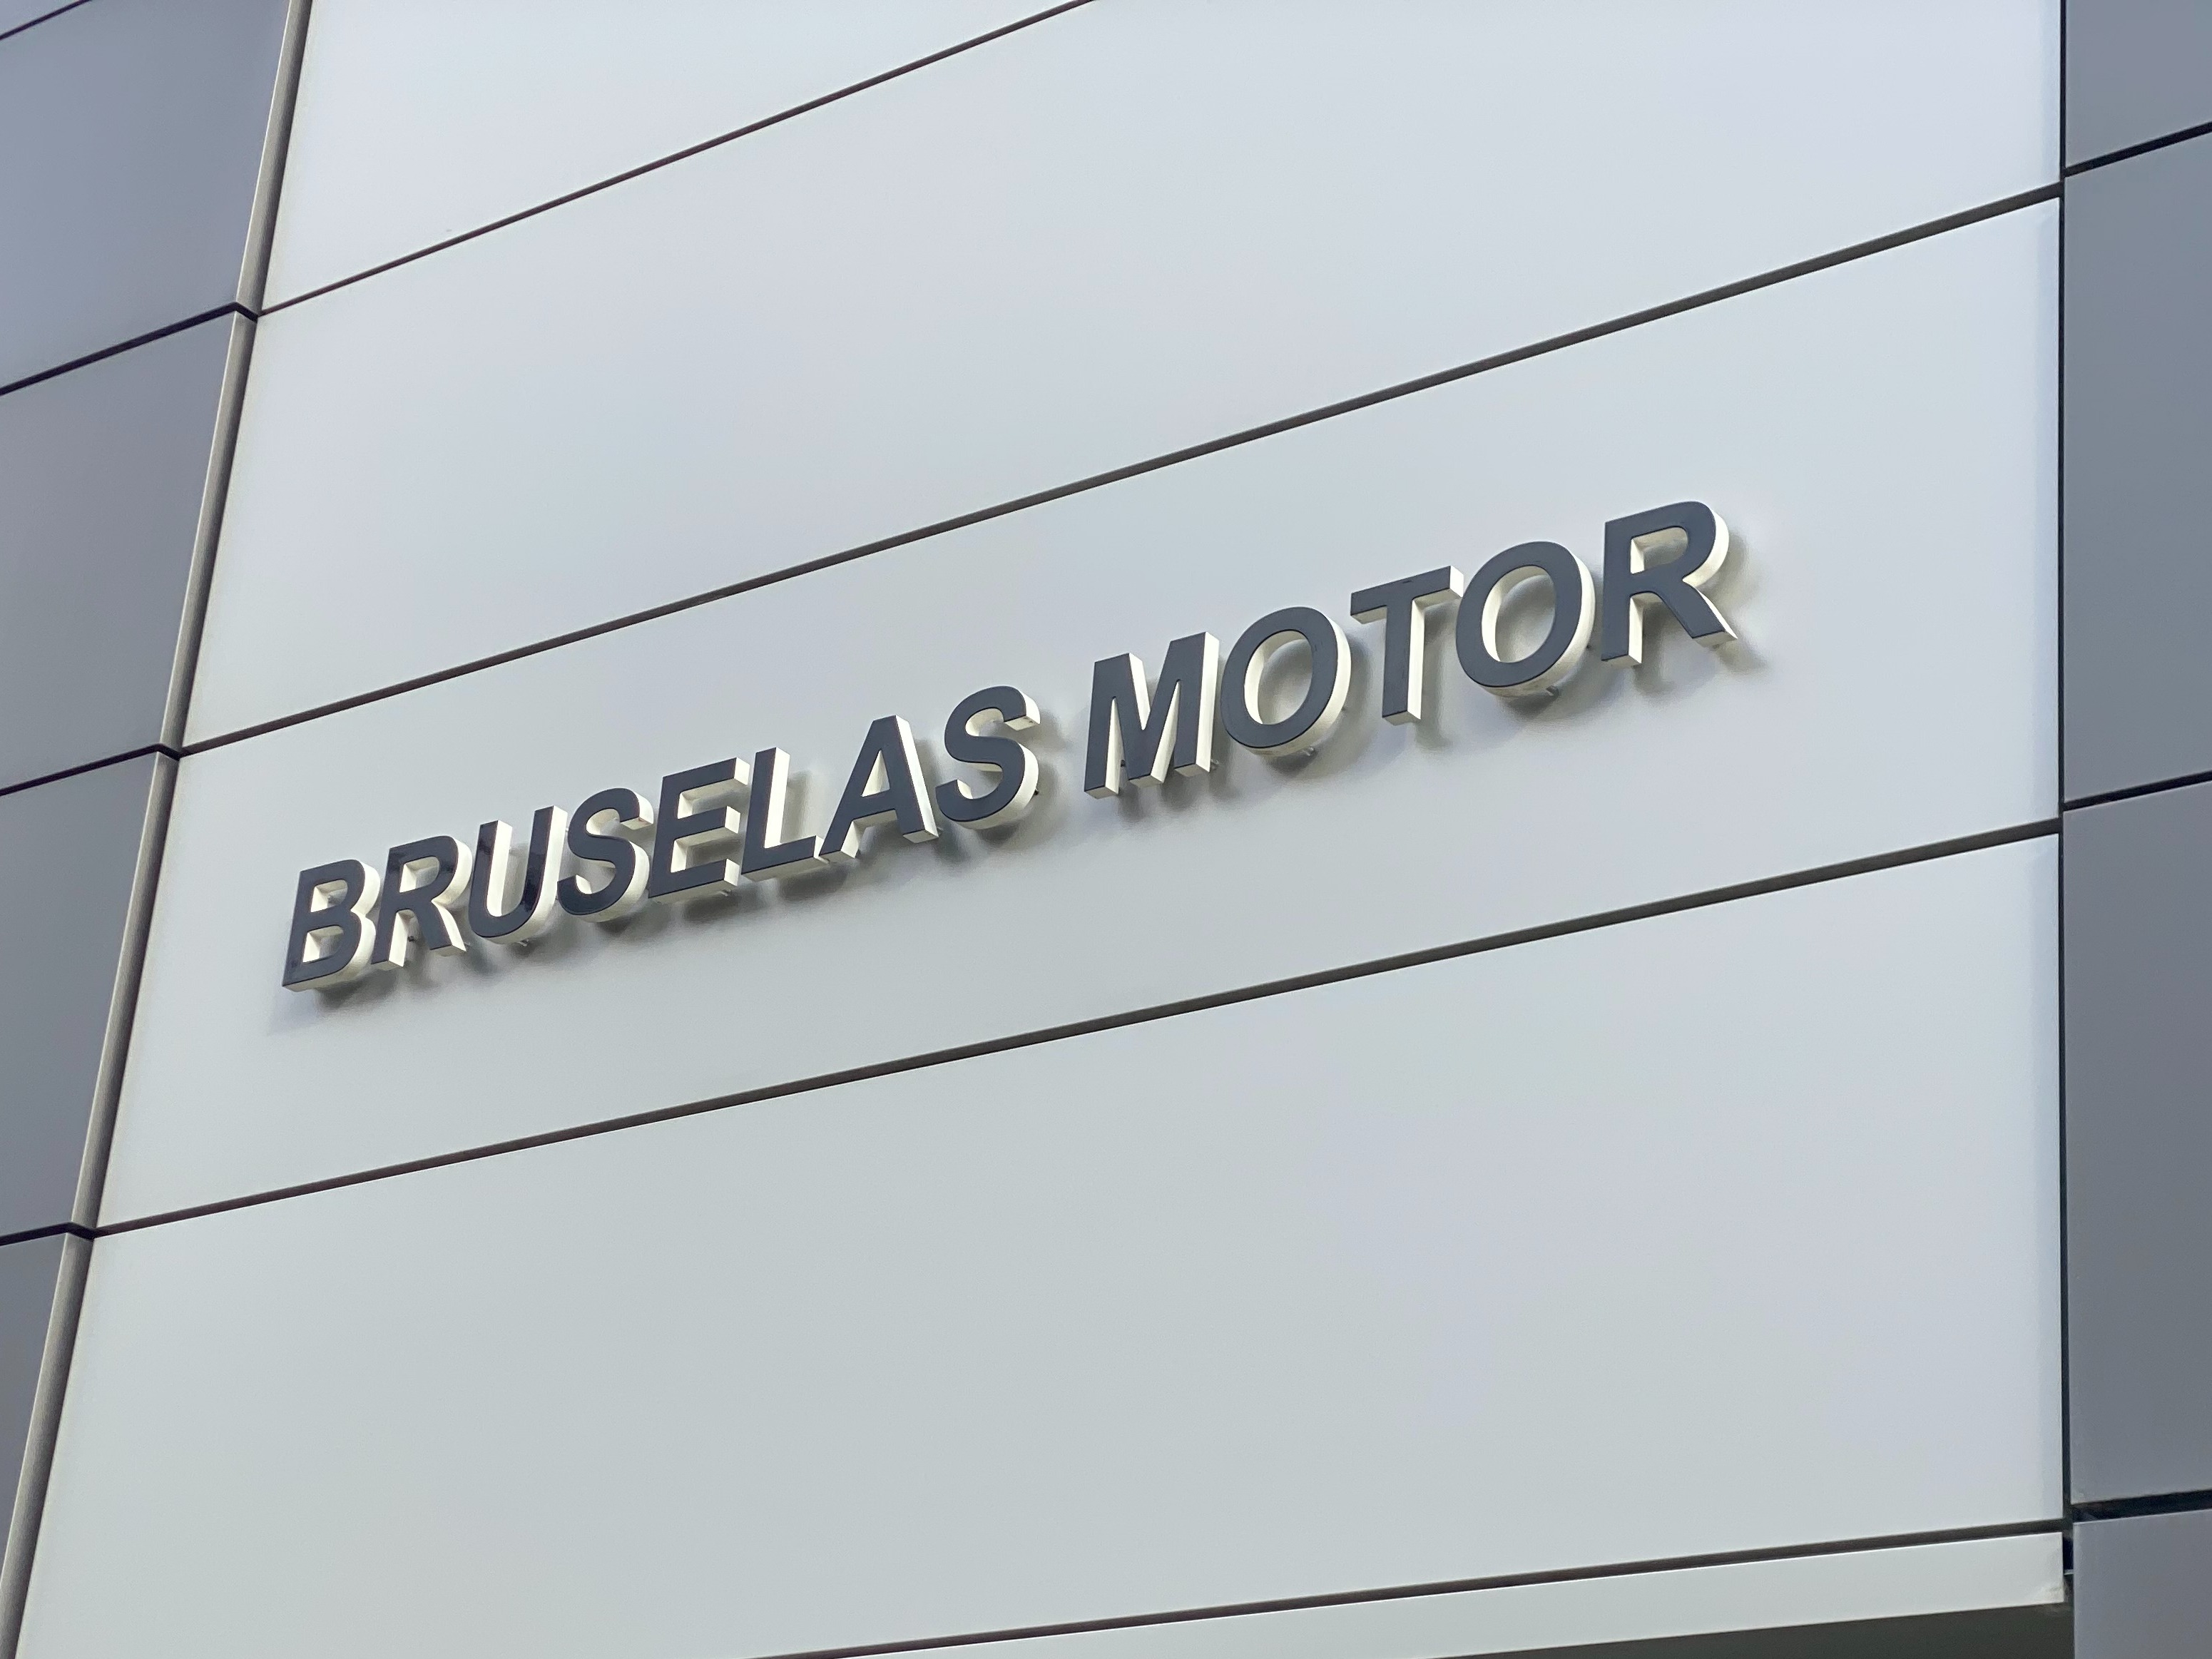 Bruselas Motor Concesionario Jaguar Land Rover